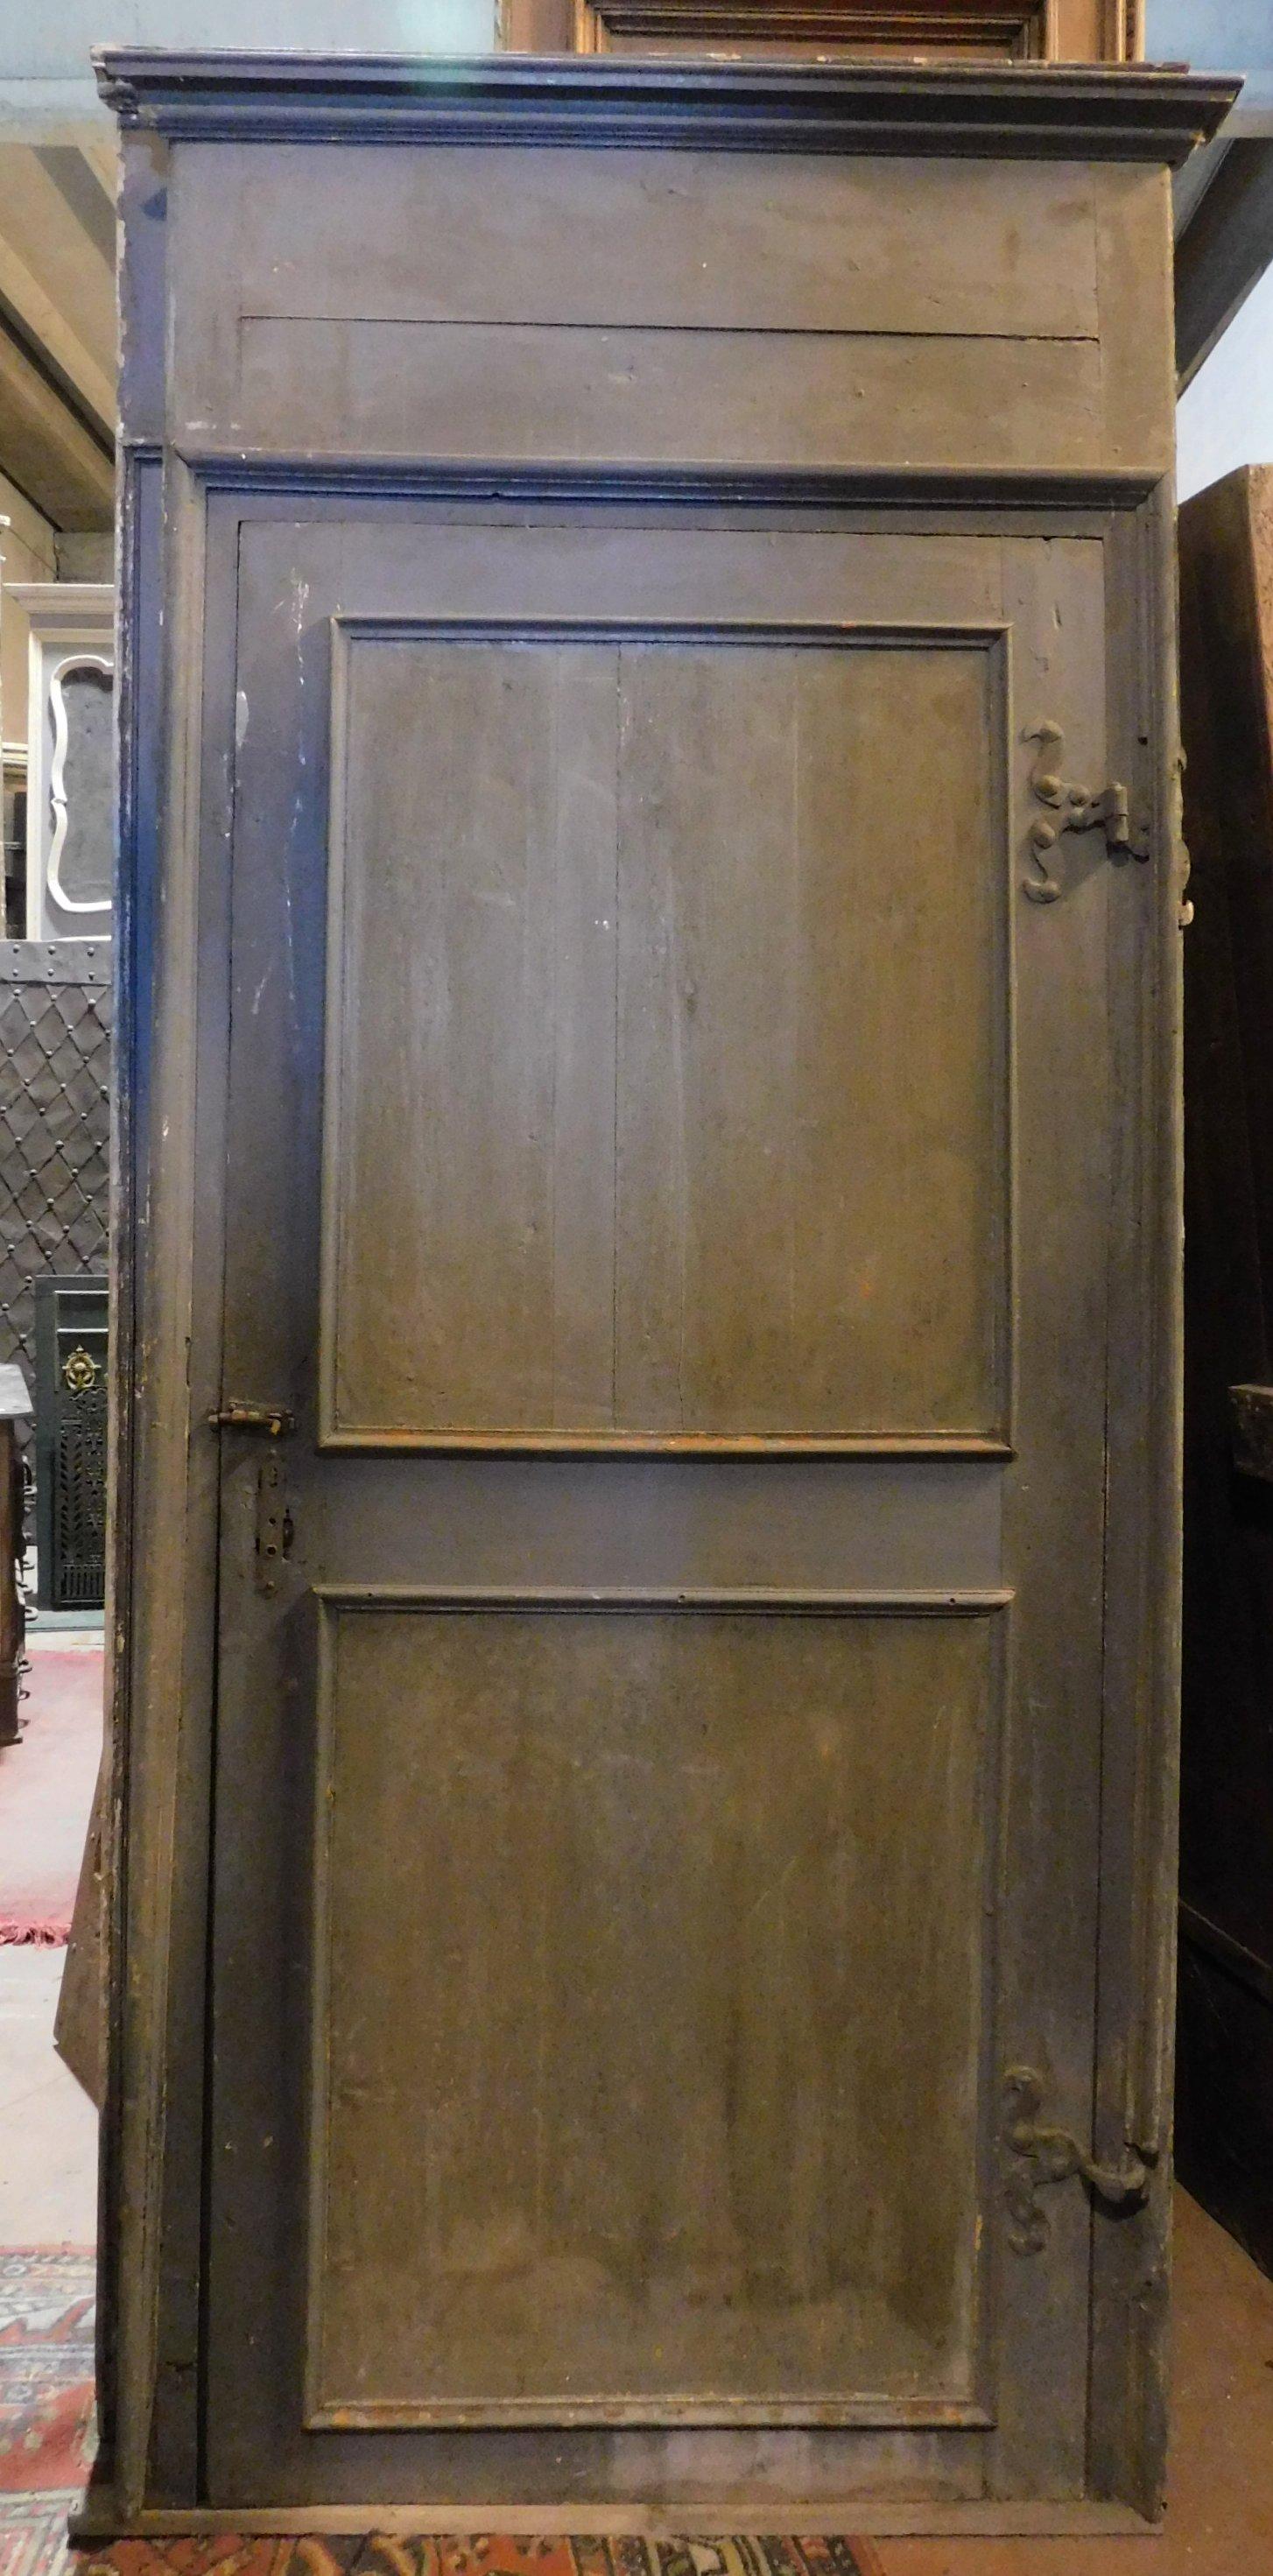 Paar antike, blau und grau patinierte Türen mit originalem hohen Rahmen, die Mitte des 18. Jahrhunderts für einen Adelspalast in Norditalien (Piemont) angefertigt wurden.
Unterschiedliche Größen, daher können sie separat verkauft werden.
Tür 1: